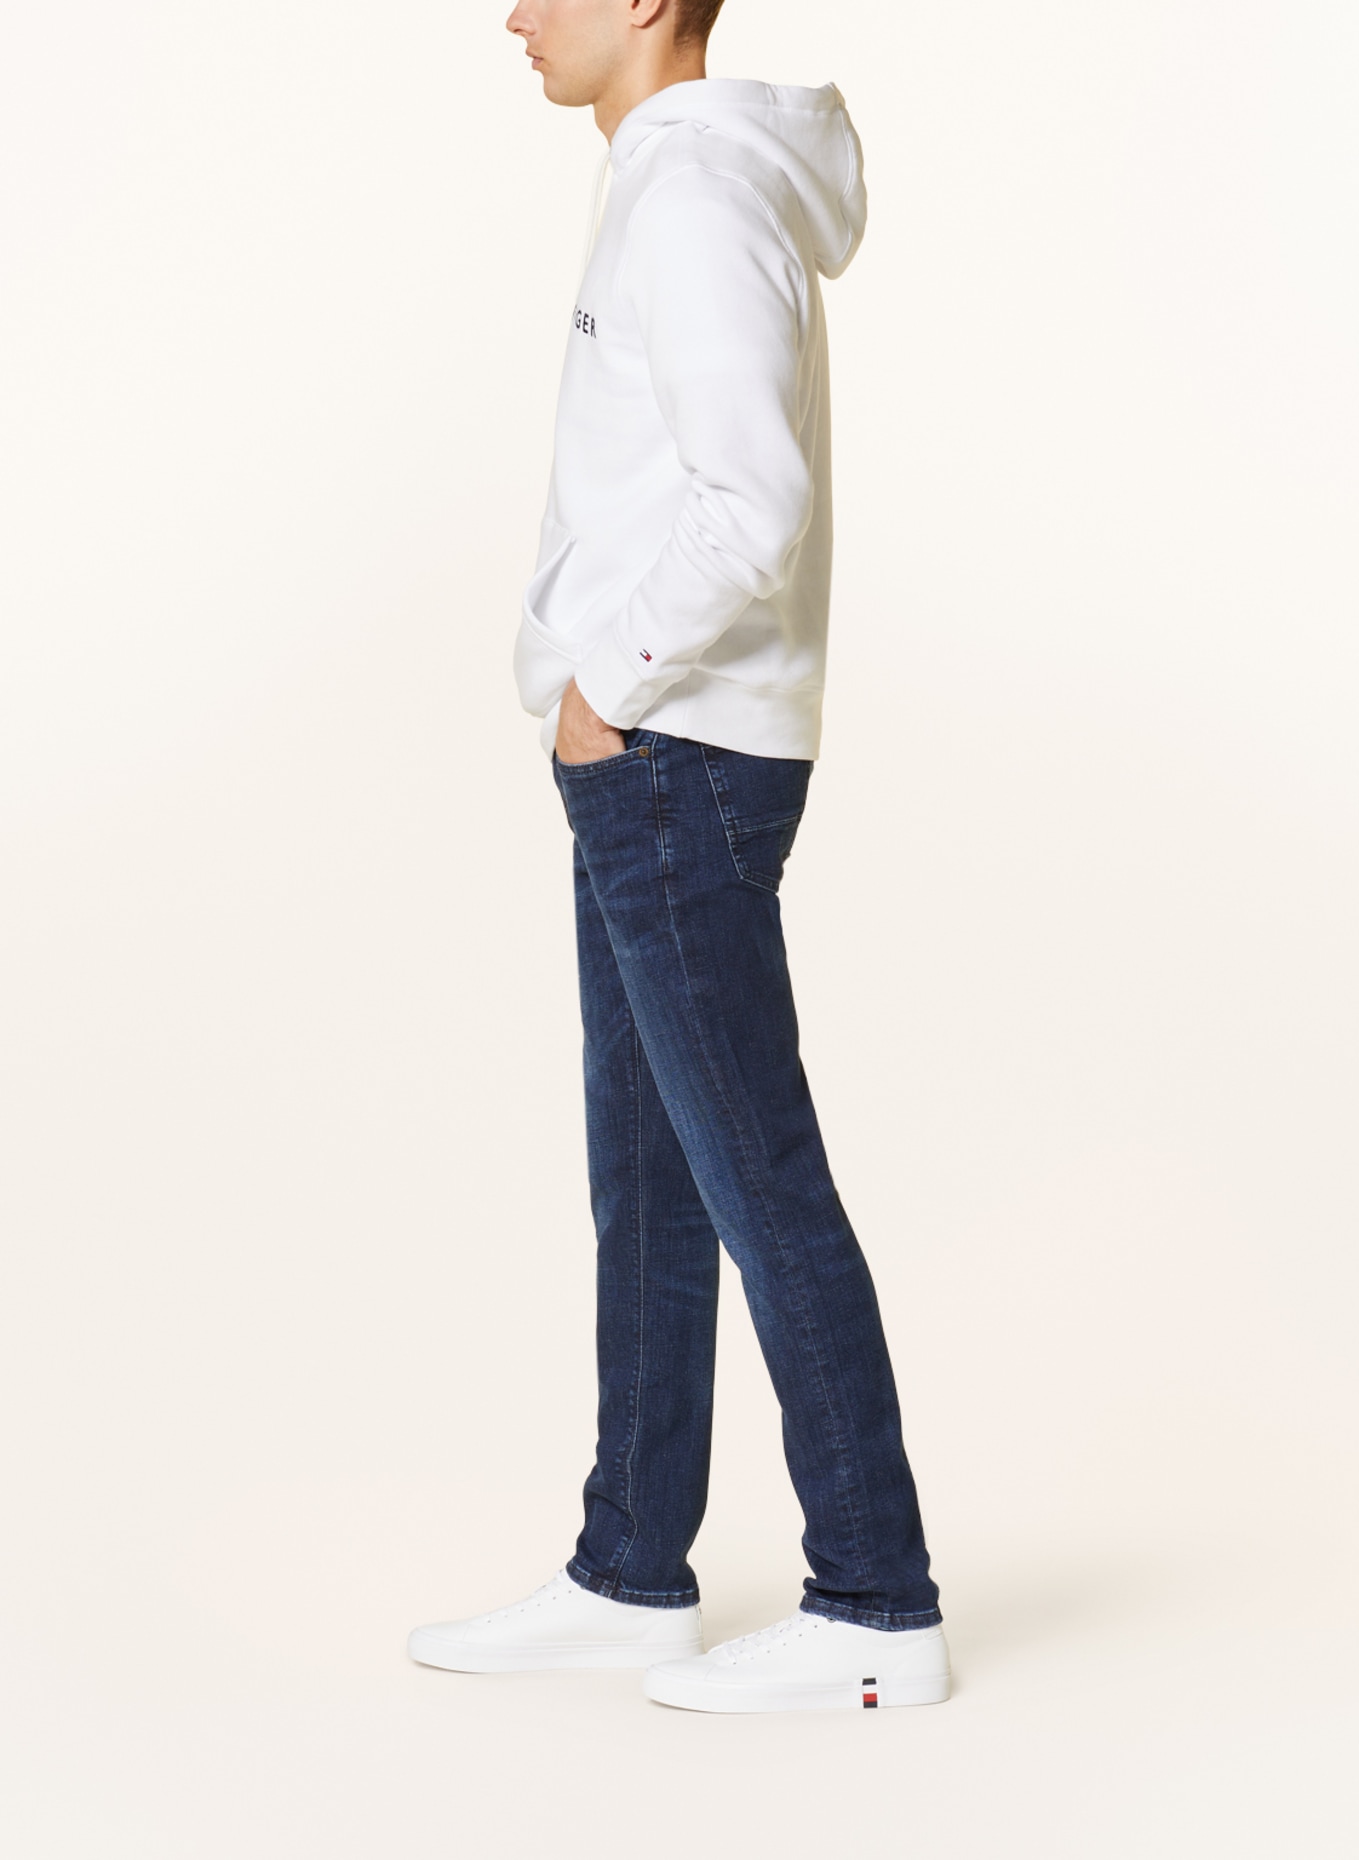 TOMMY HILFIGER Jeans CORE BLEECKER Slim Fit, Farbe: 1BS Bridger Indigo (Bild 4)